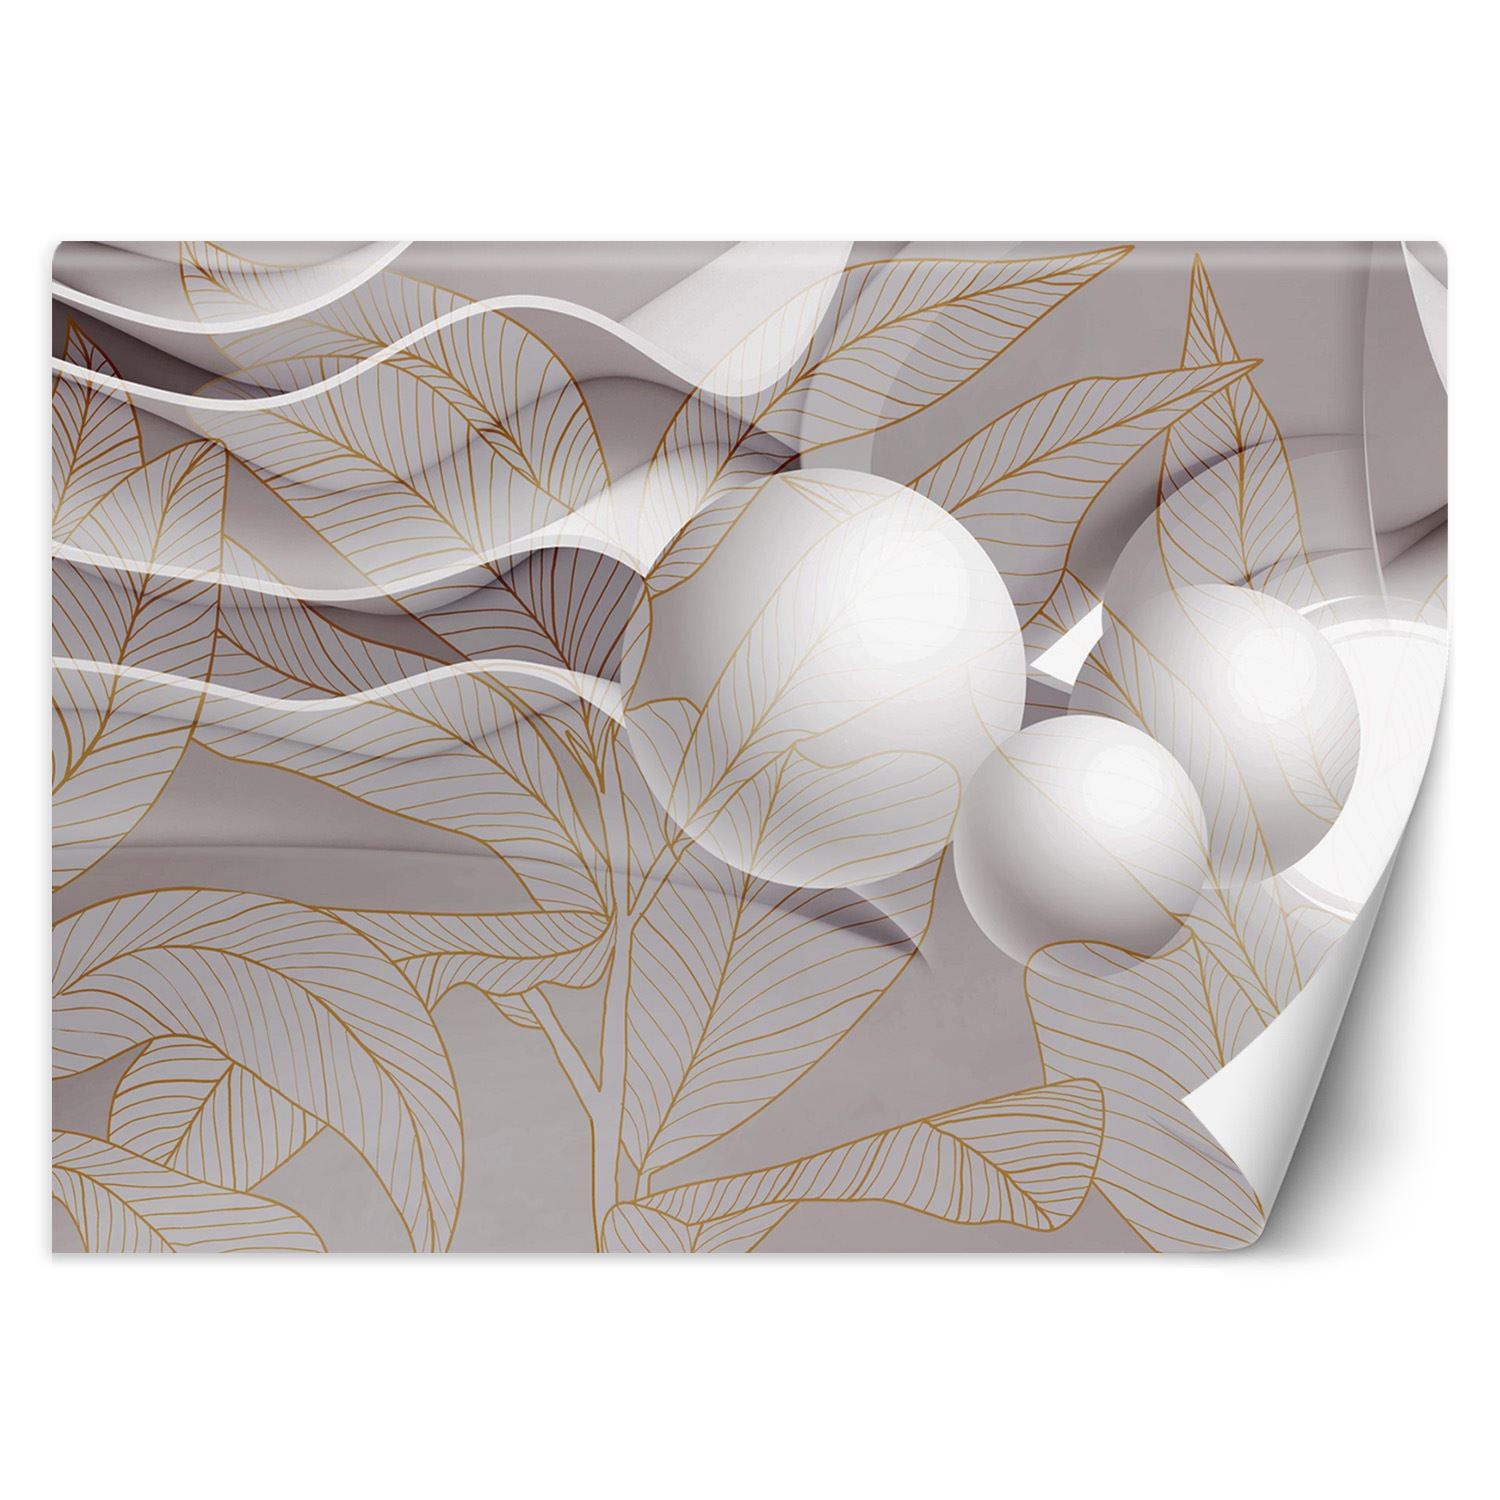 Trend24 – Behang – Goudbladeren En Bollen 3D – Behangpapier – Fotobehang 3D – Behang Woonkamer – 450x315x2 cm – Incl. behanglijm